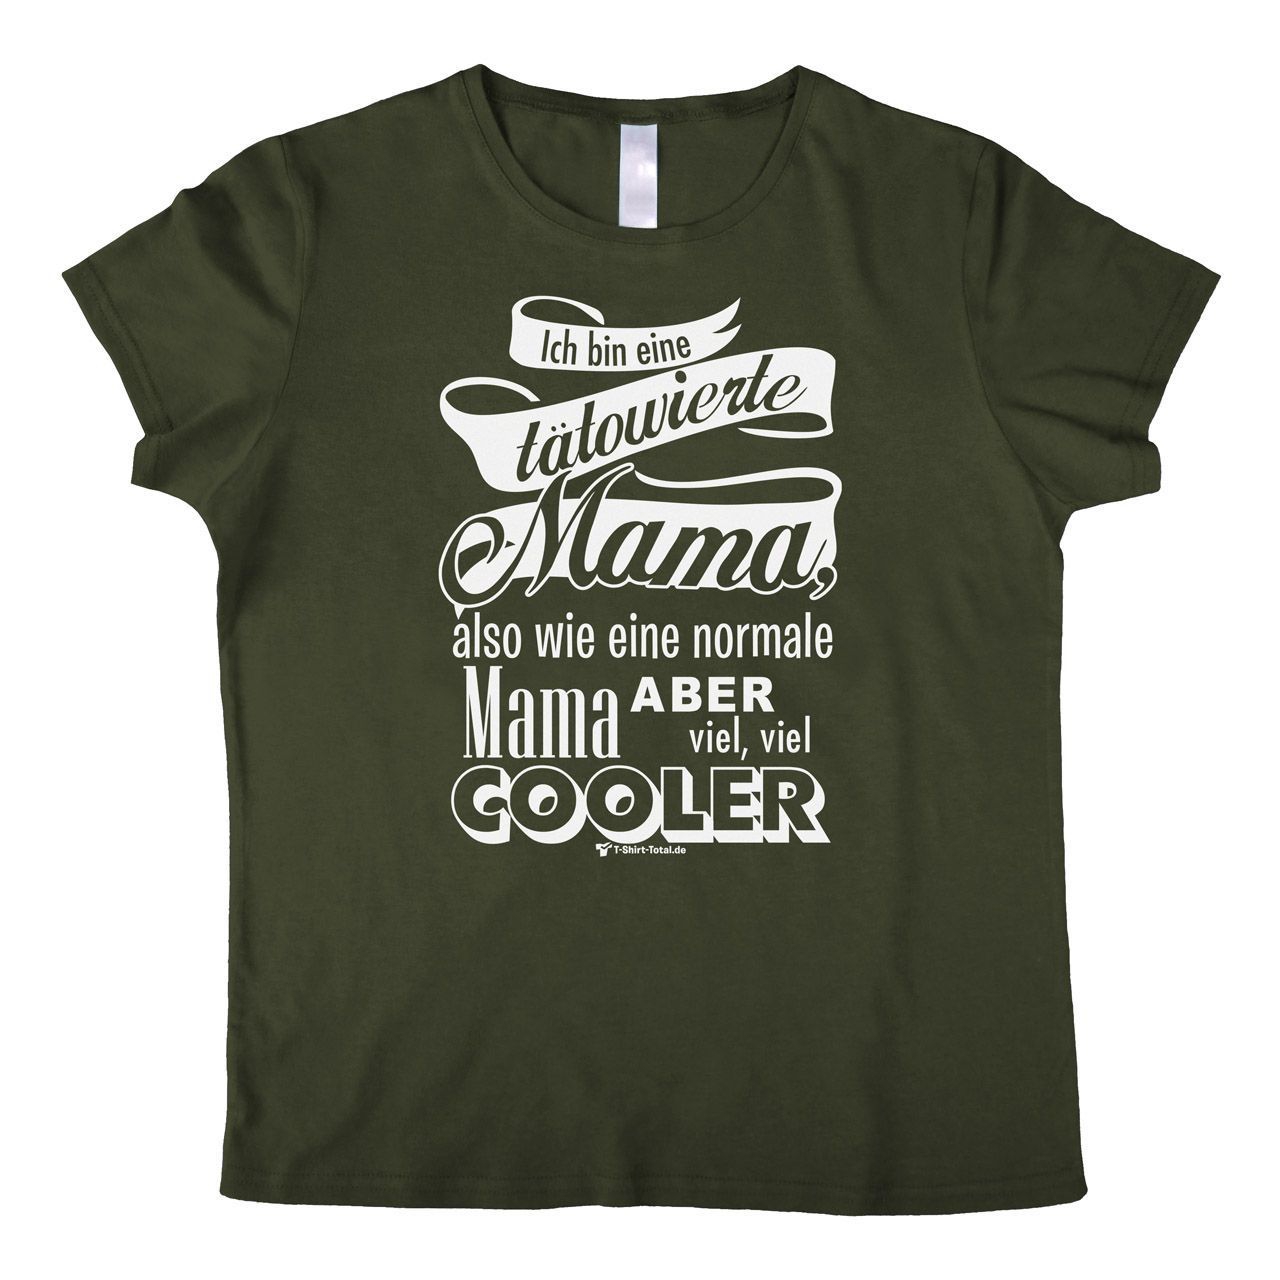 Tätowierte Mama Woman T-Shirt khaki Small